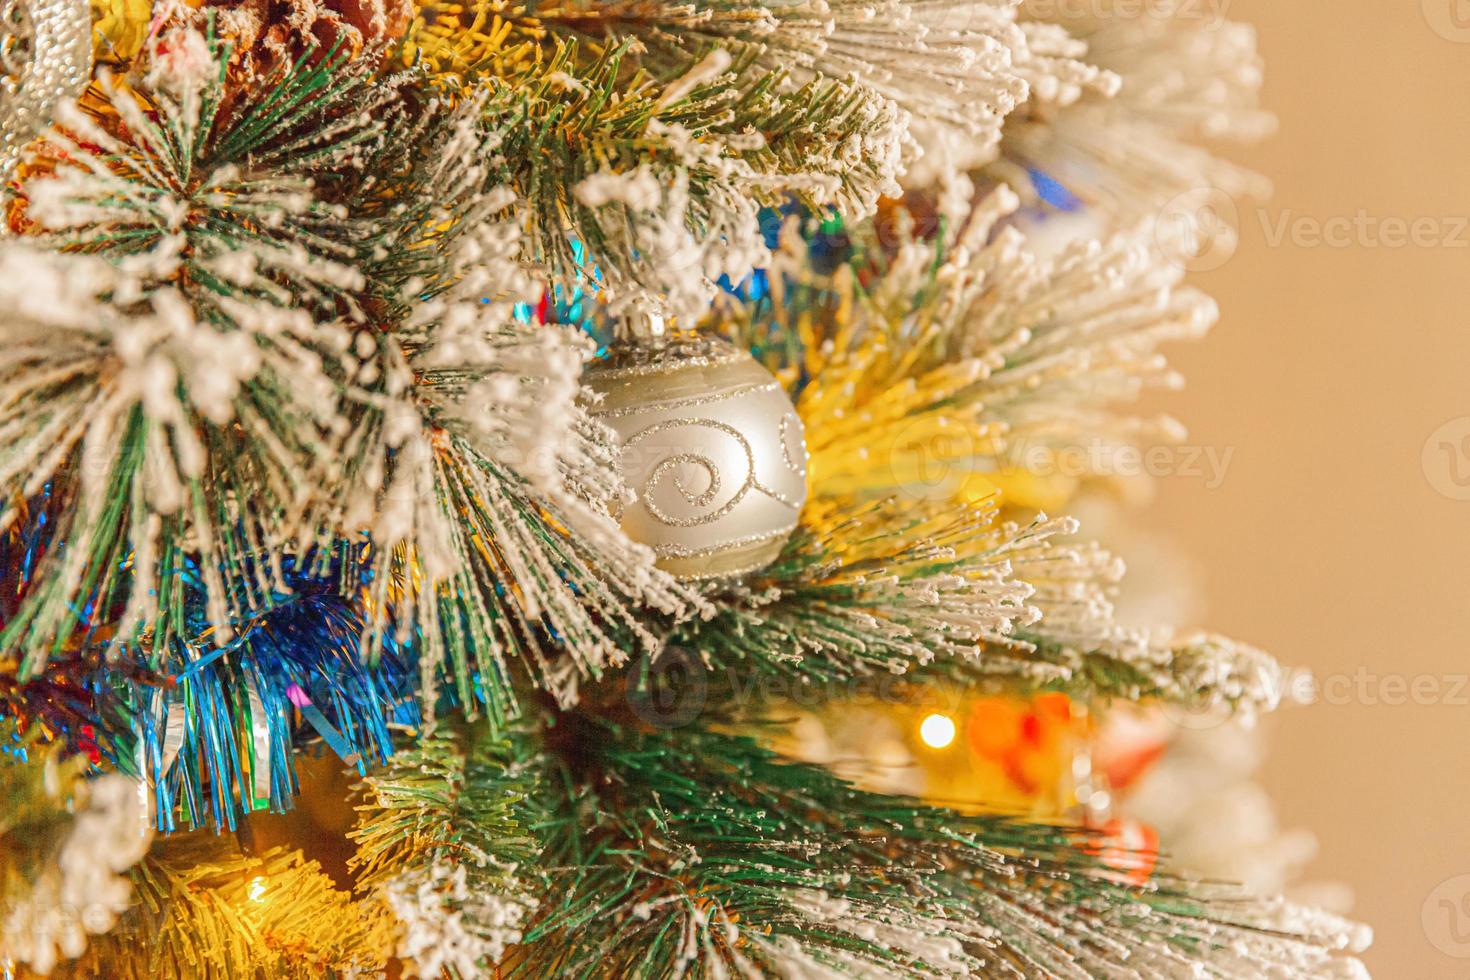 klassisches weihnachtsneujahr geschmückter neujahrsbaum mit farbigen foto